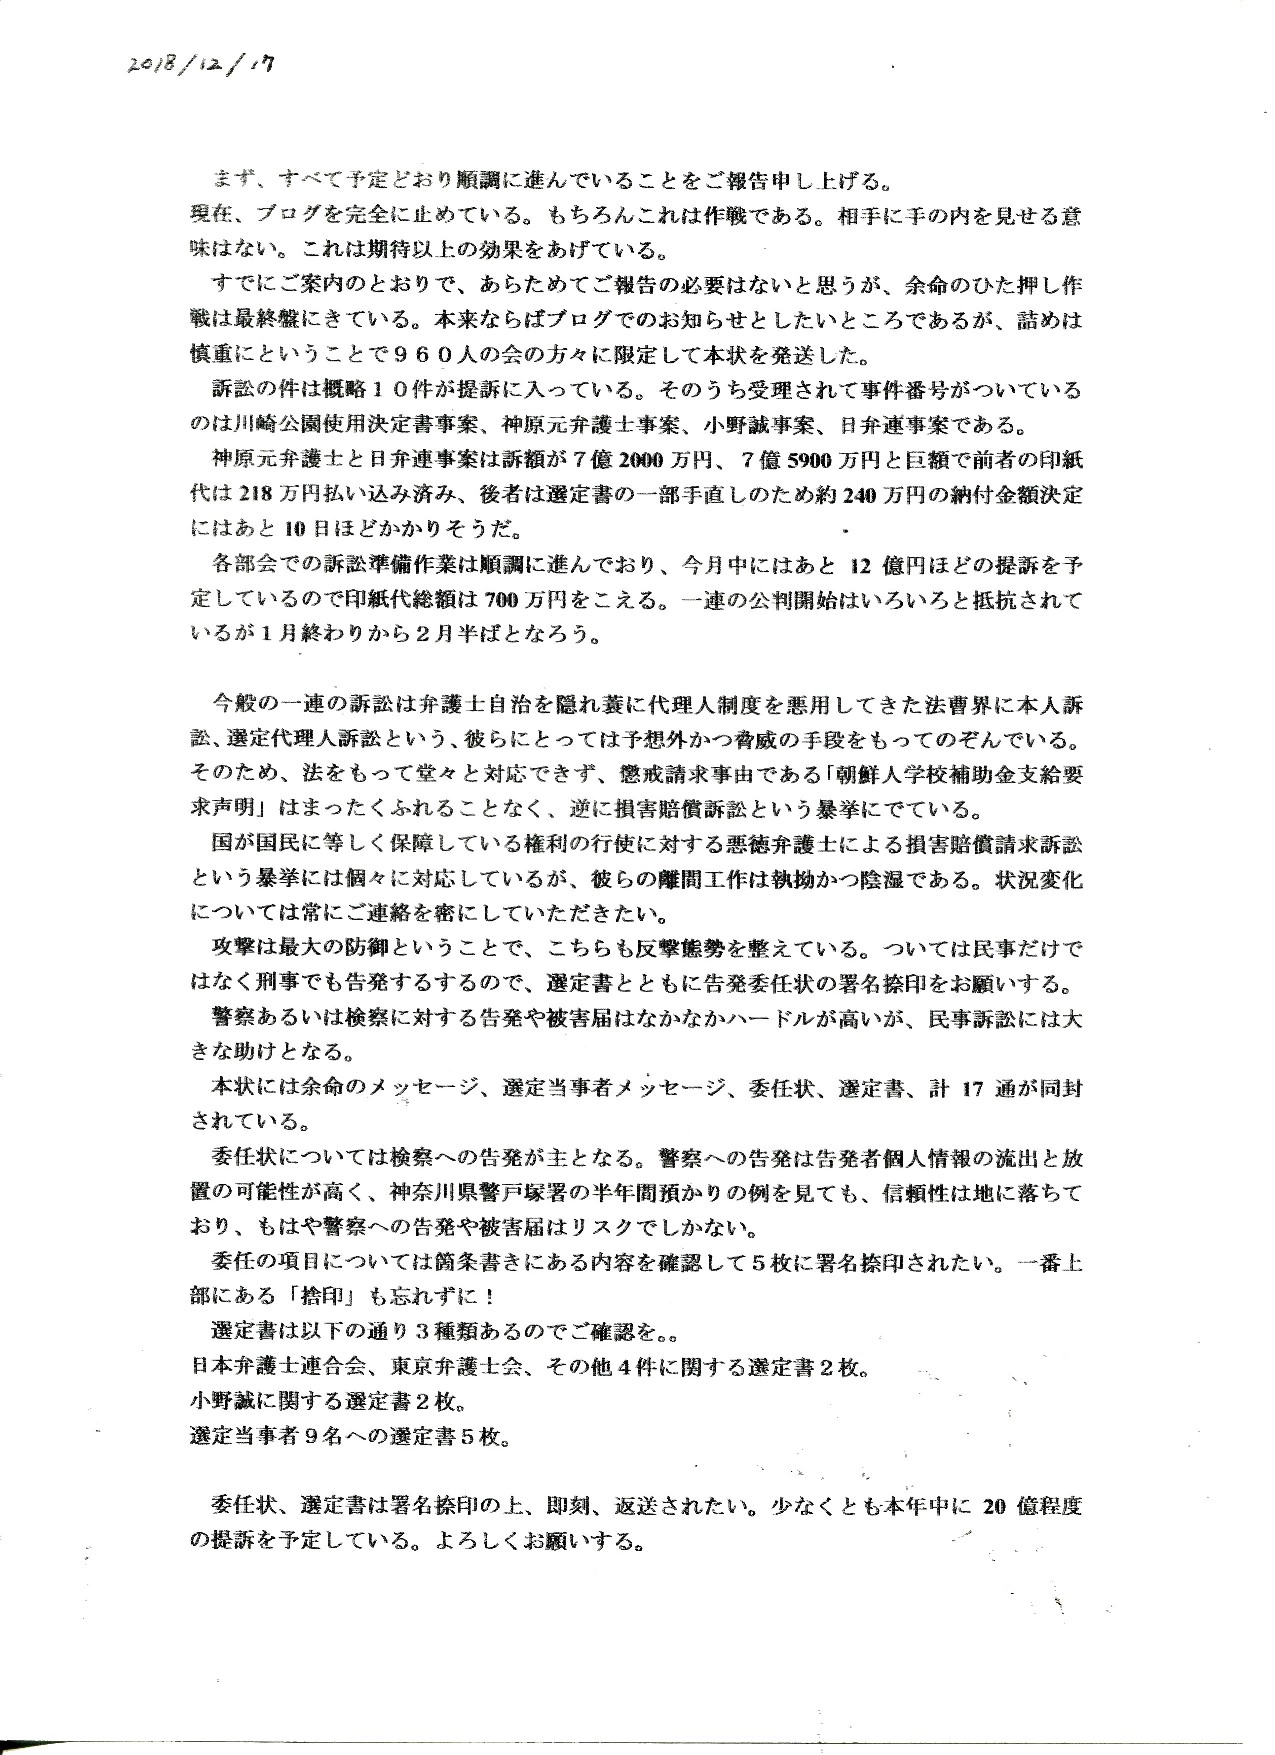 虚偽告訴罪 教唆「検察への告発 第7次」 余命三年時事日記から日本の名誉を取り戻す会